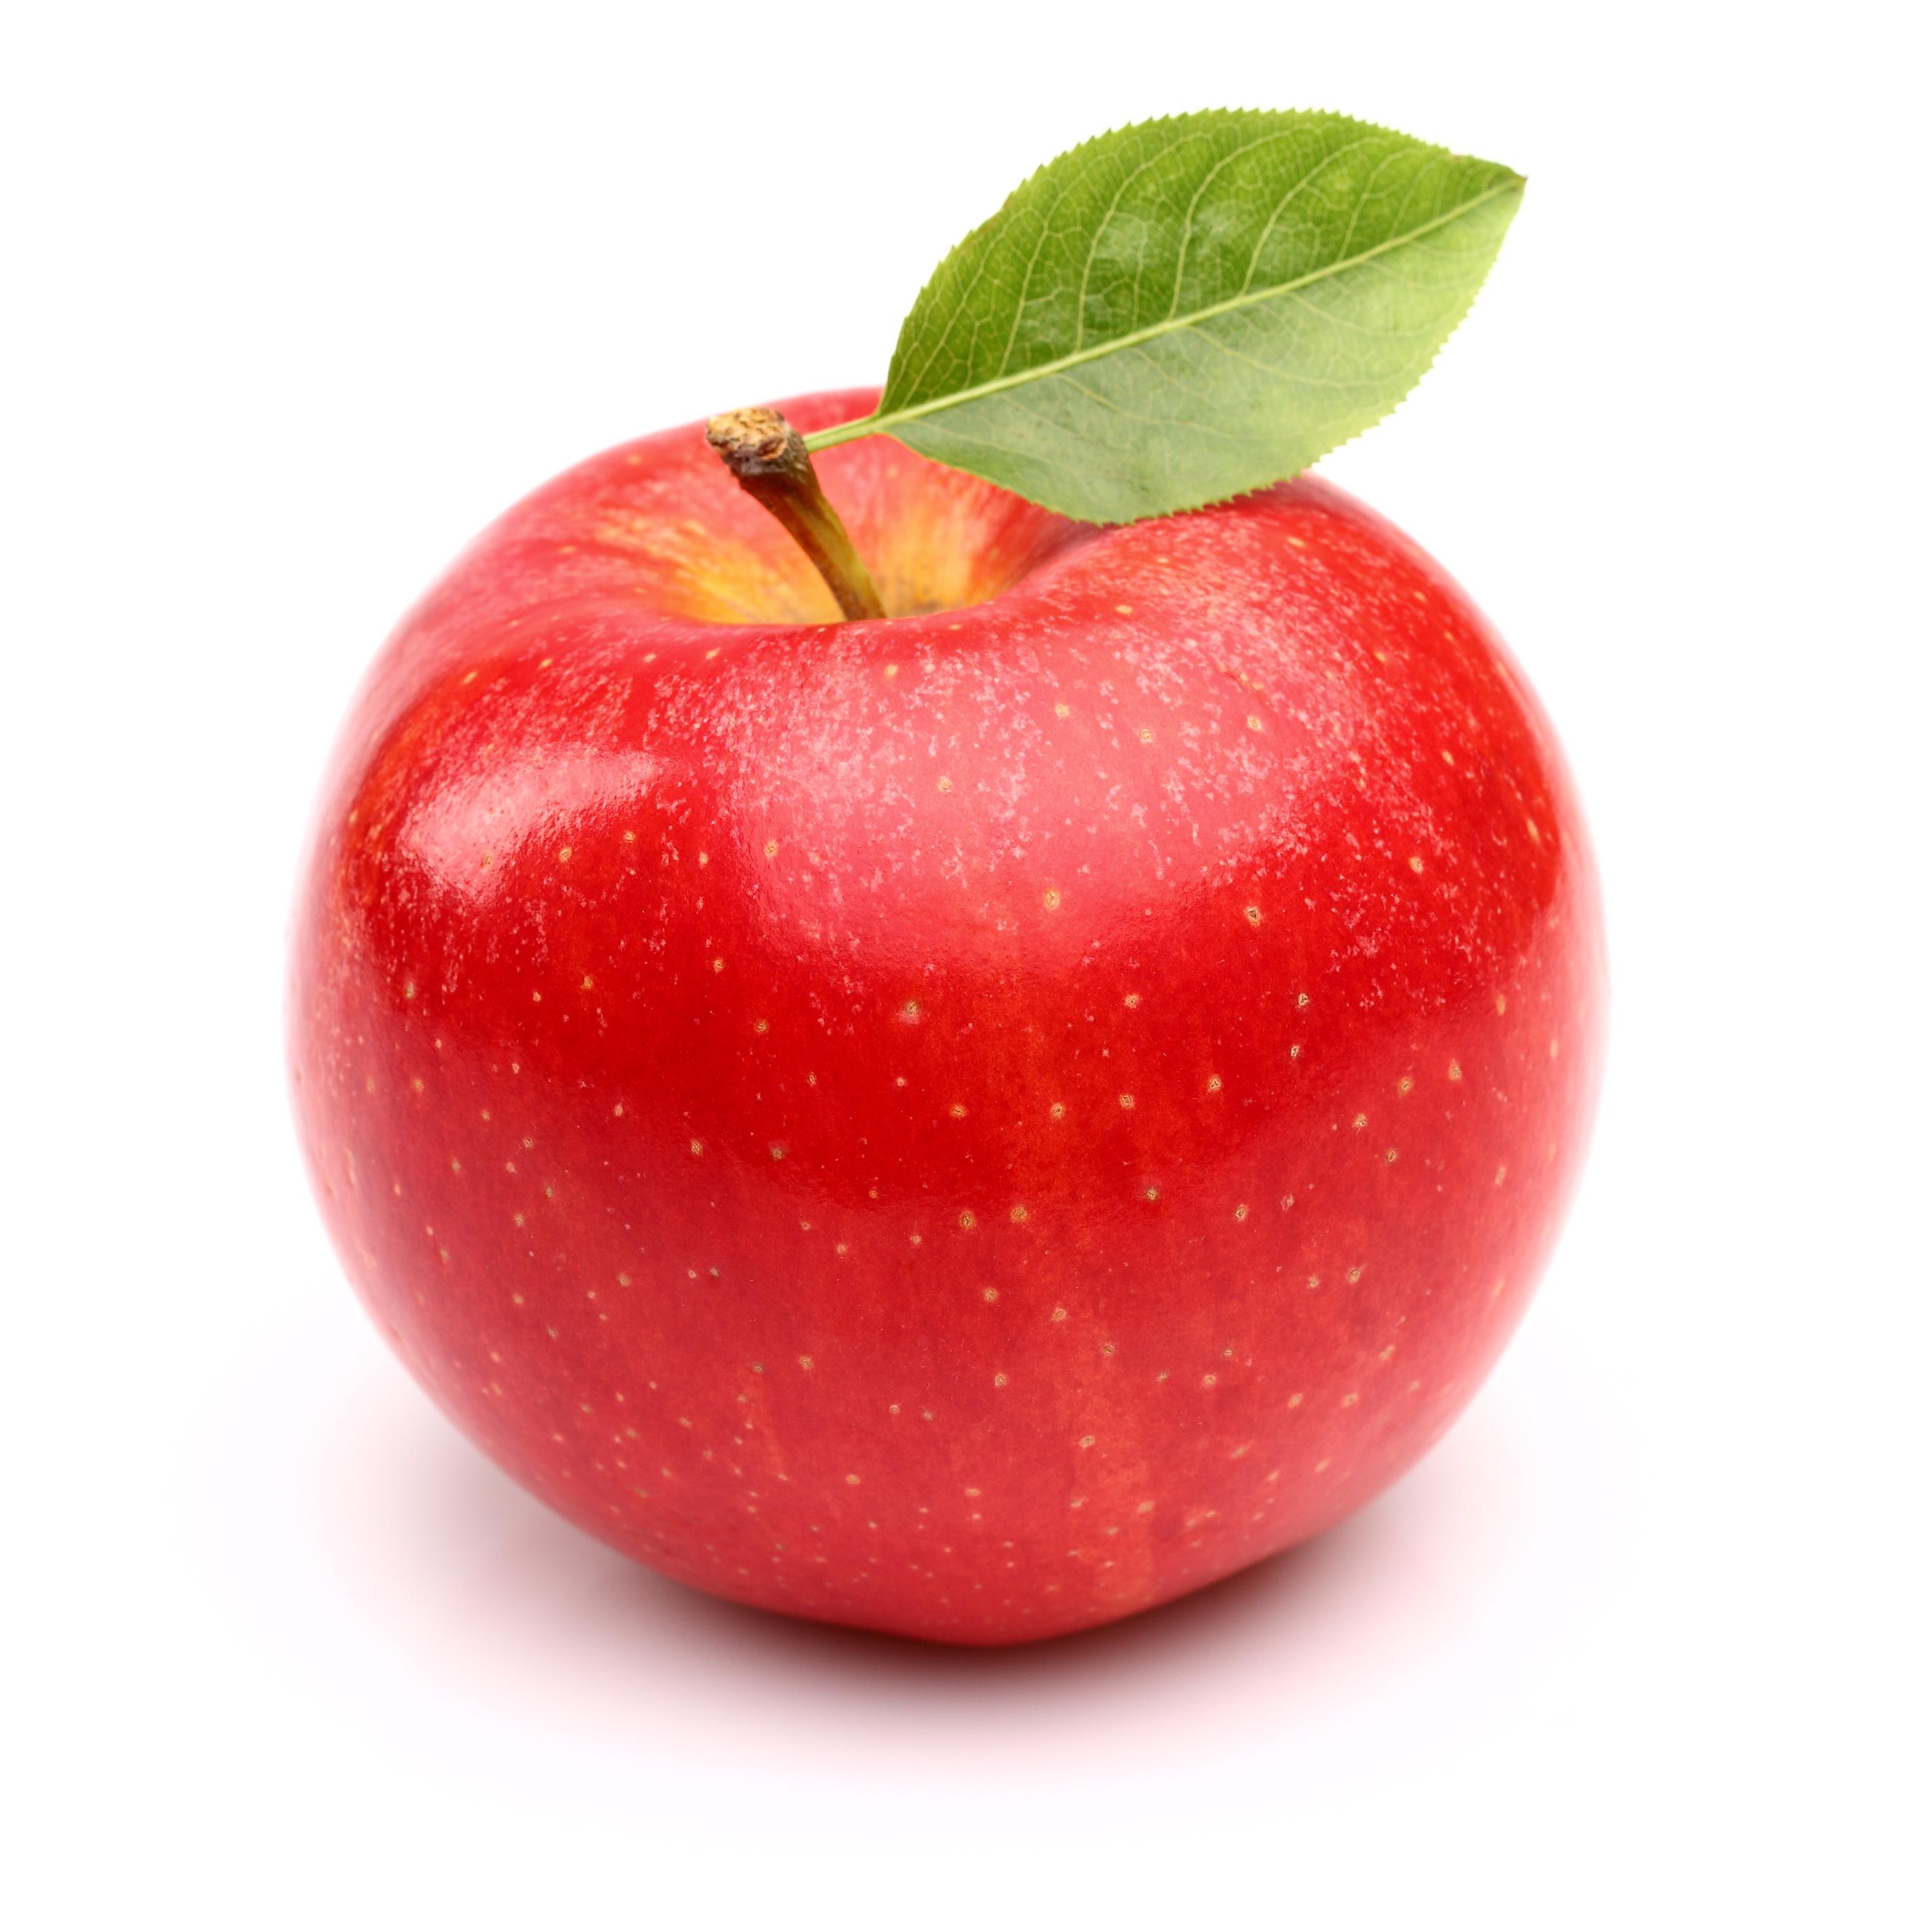 фото яблока пнг